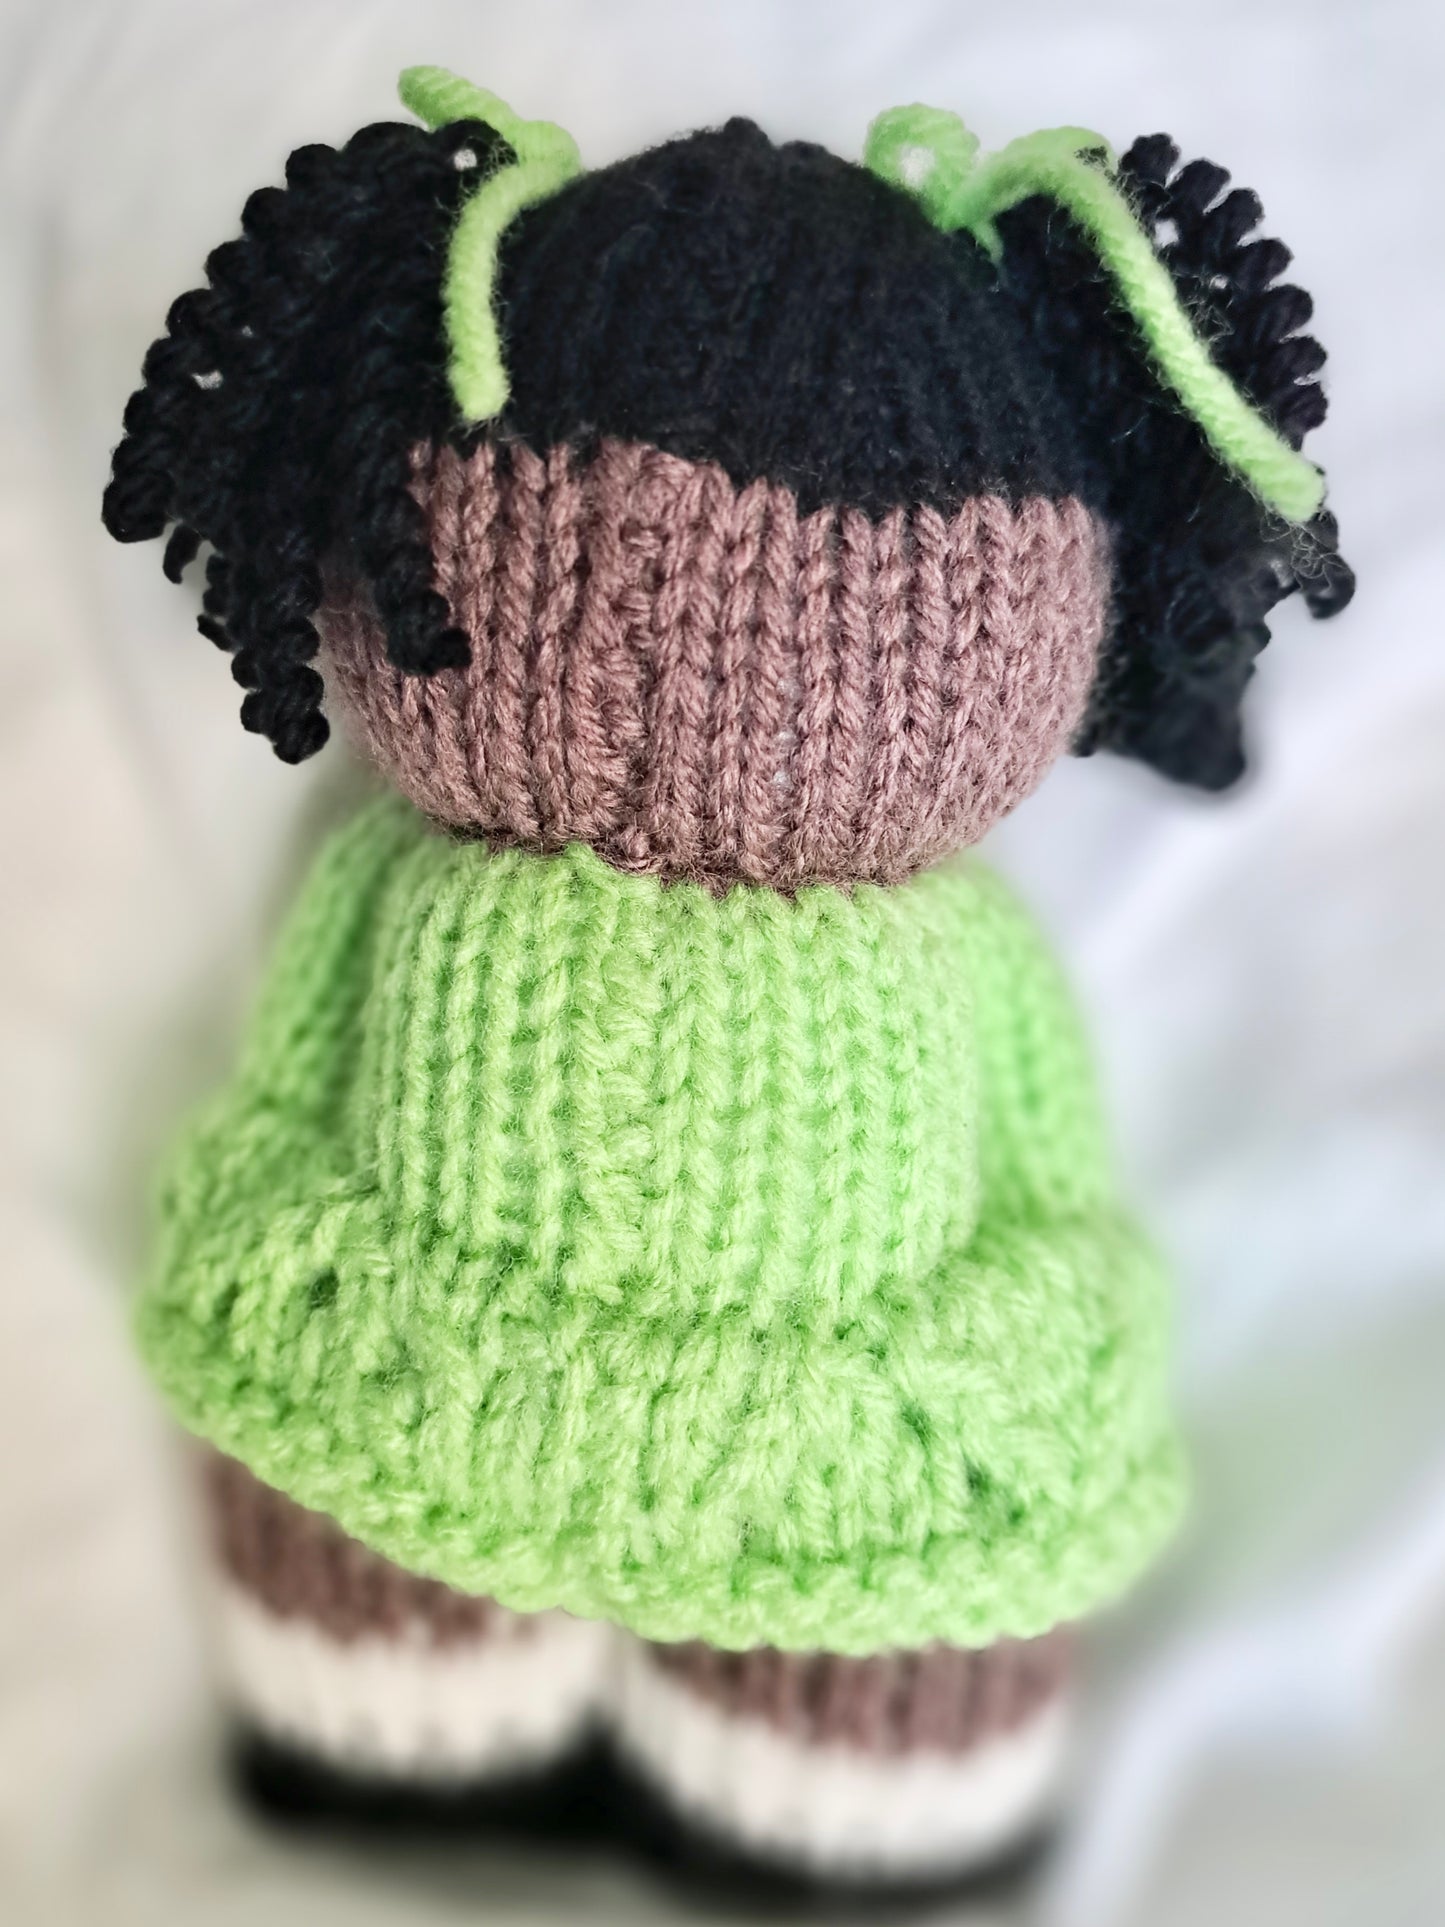 Black knit doll - Green dress